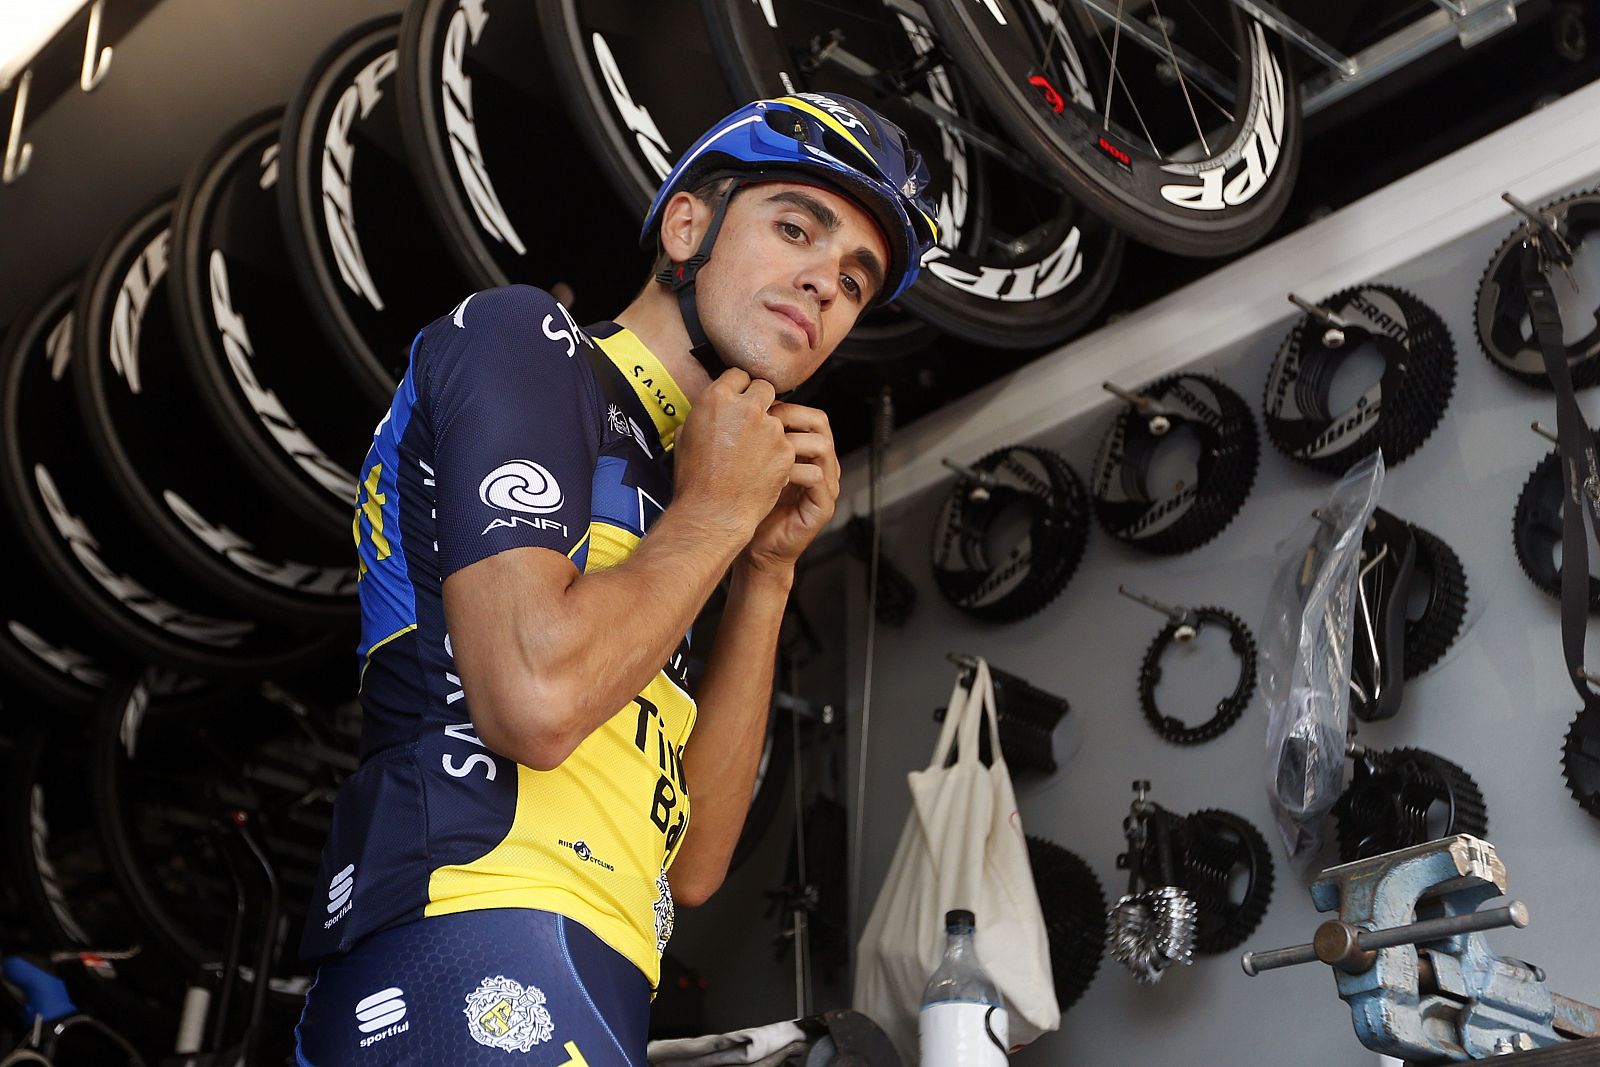 Imagen de archivo del ciclista Alberto Contador.